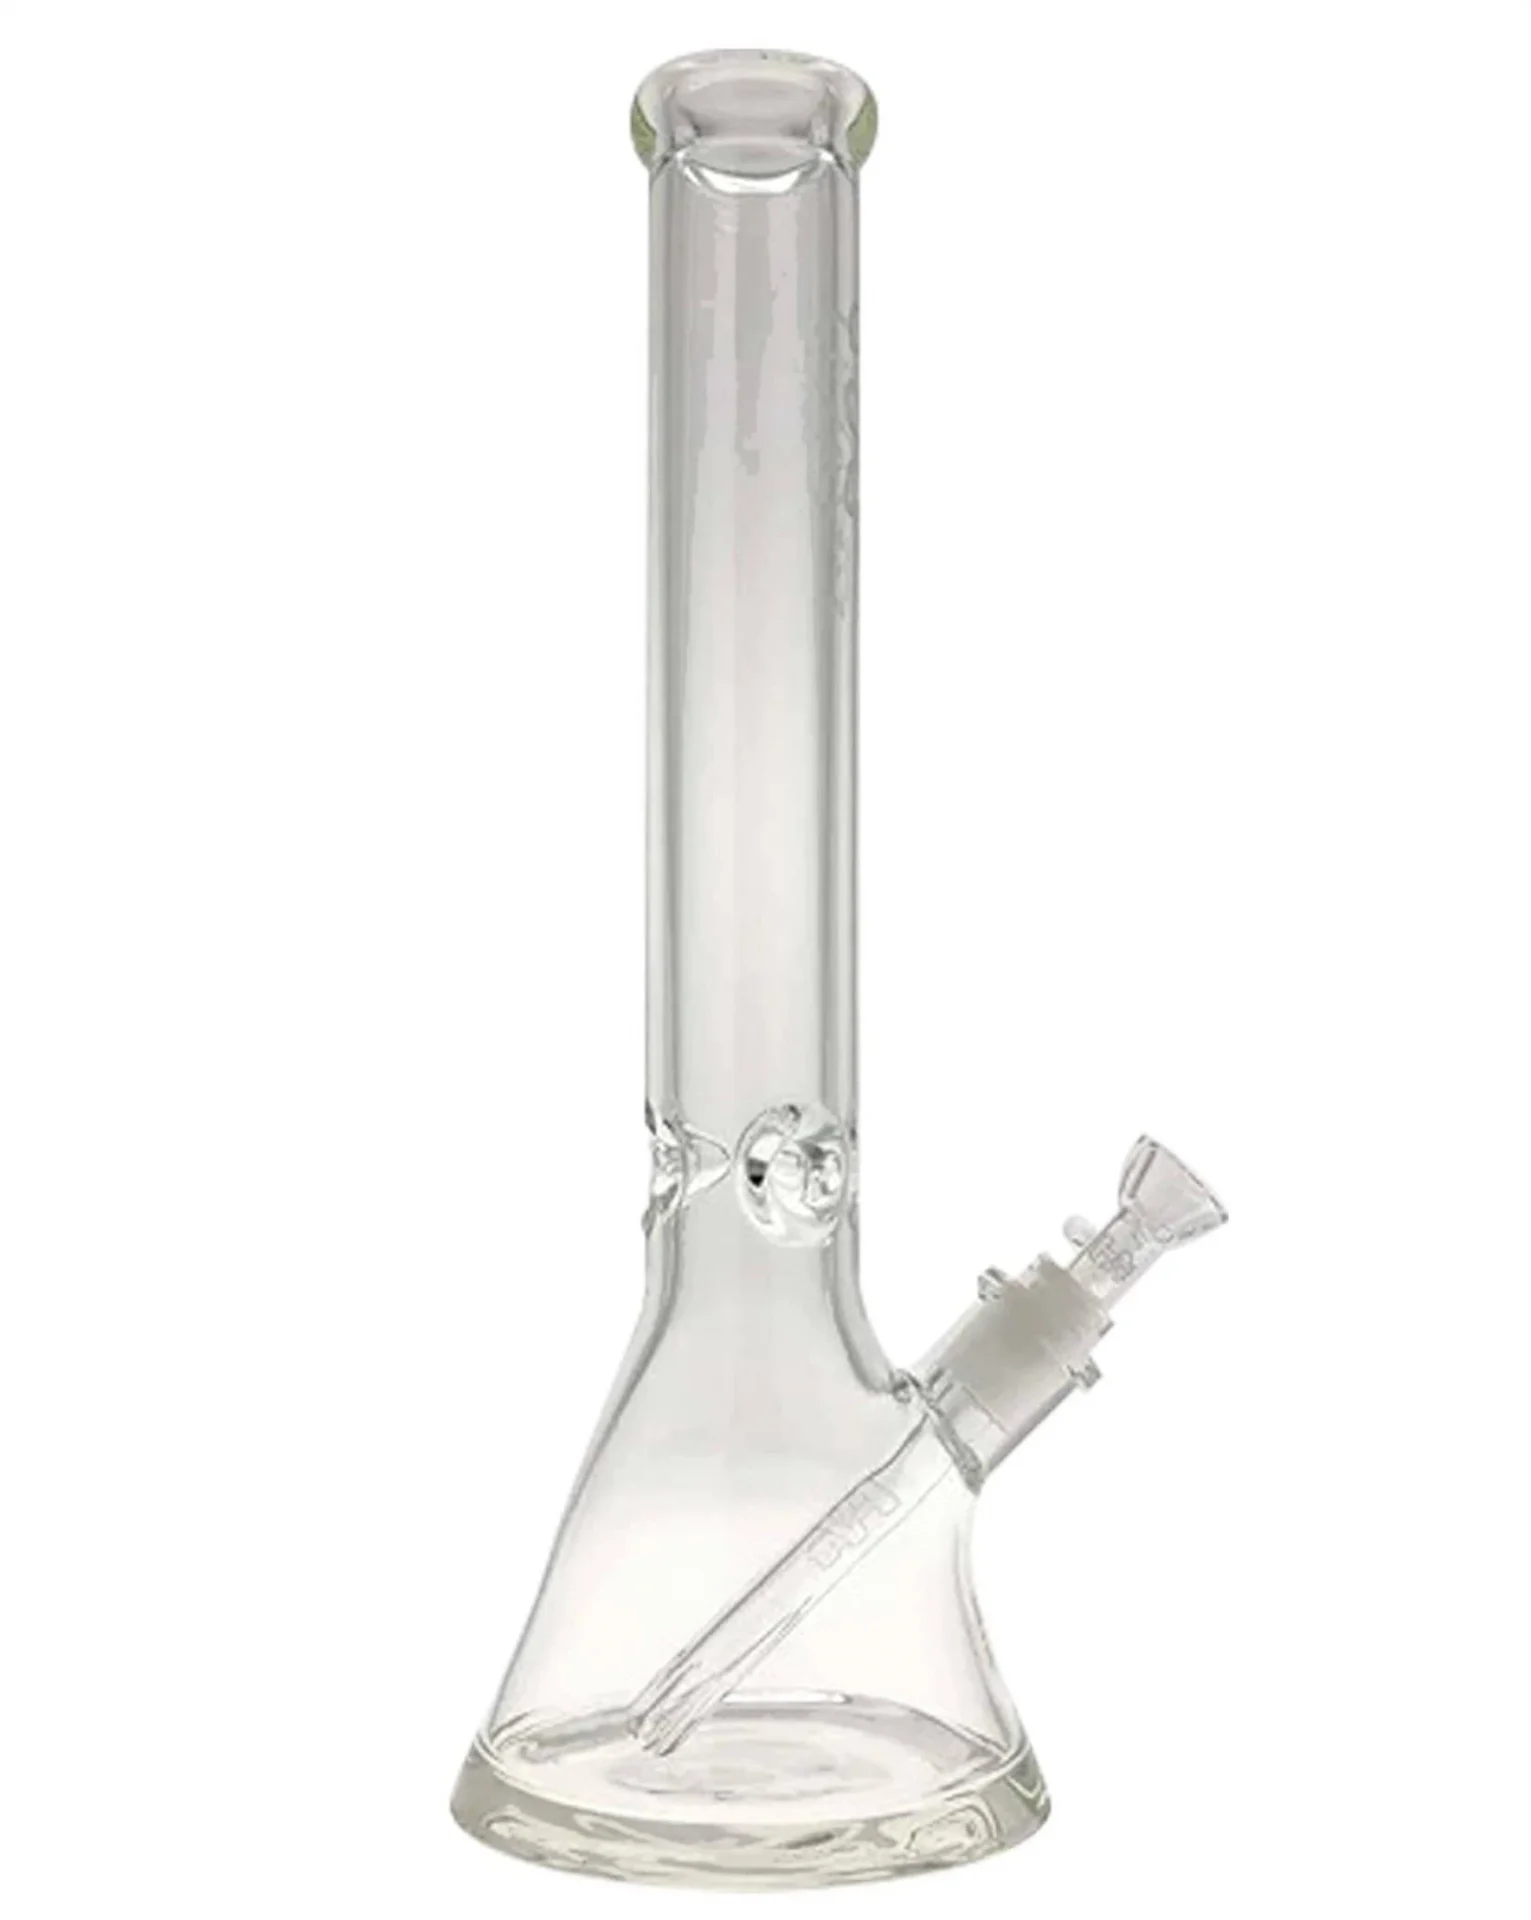 thick ass glass super thick beaker bong bong f18 14 wp 289t 0212c sd 03 15244621807690